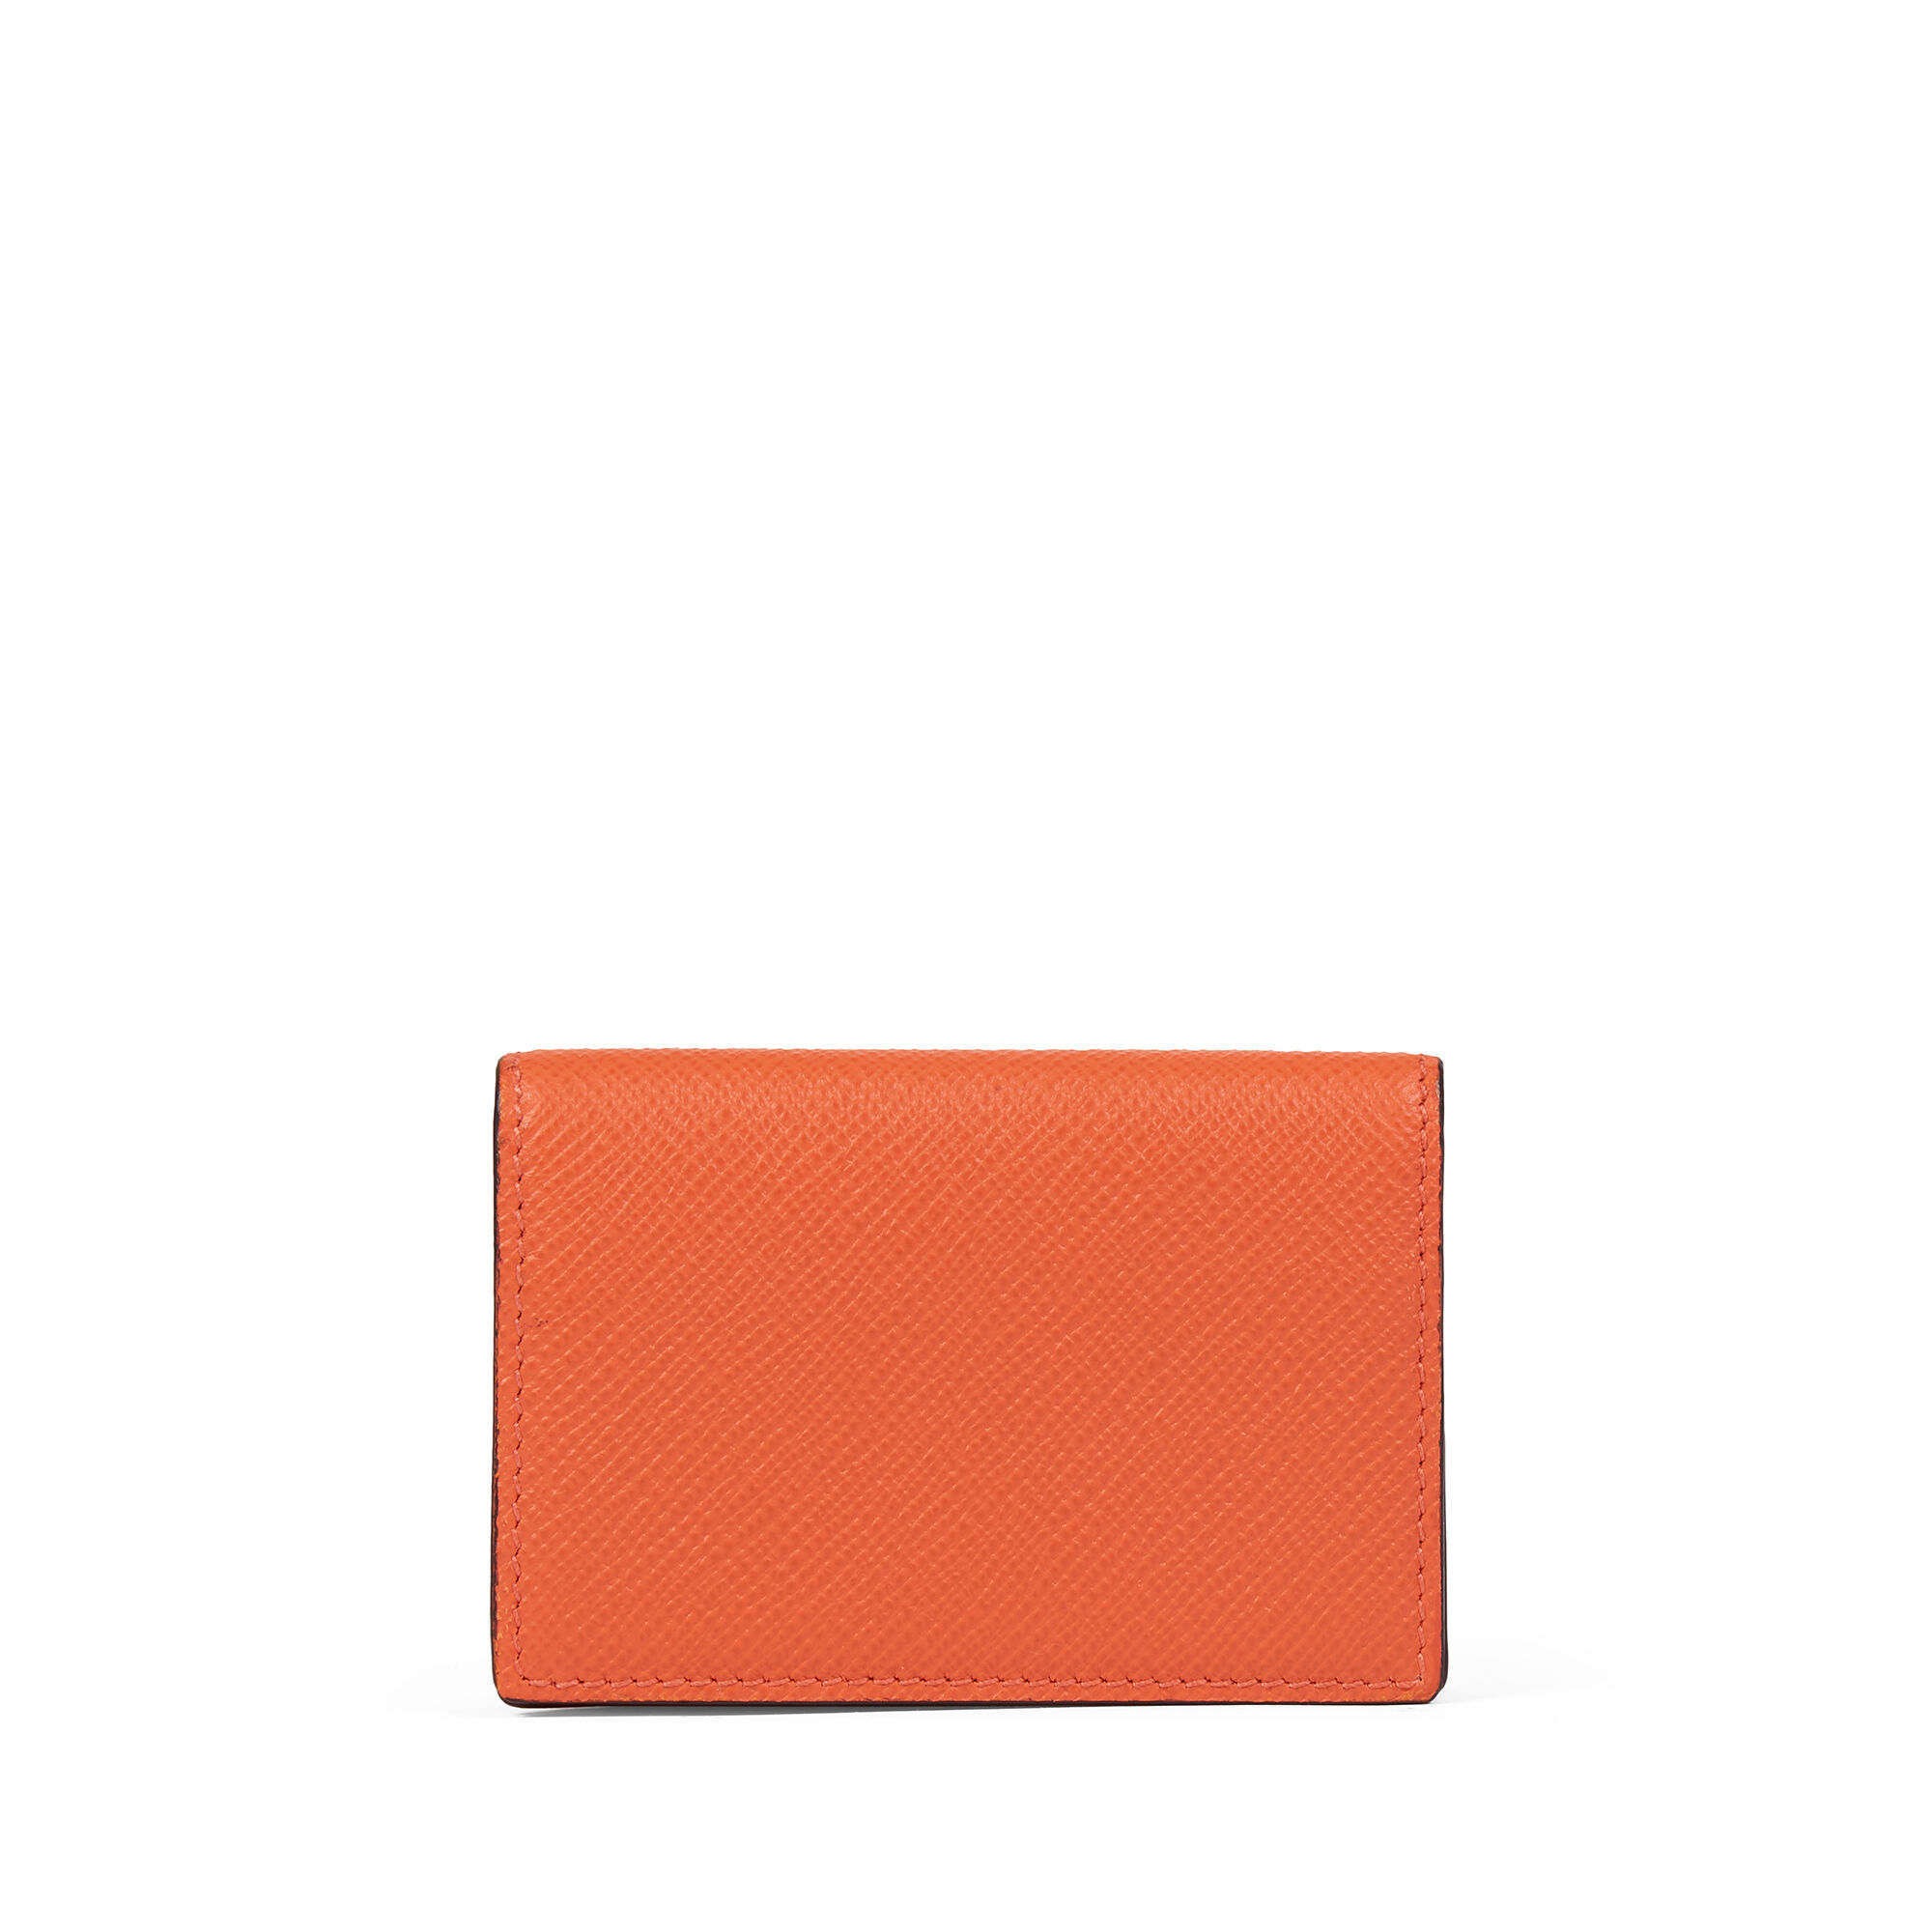 Panamaレザー二つ折りカードケース、スナップボタン付き in orange